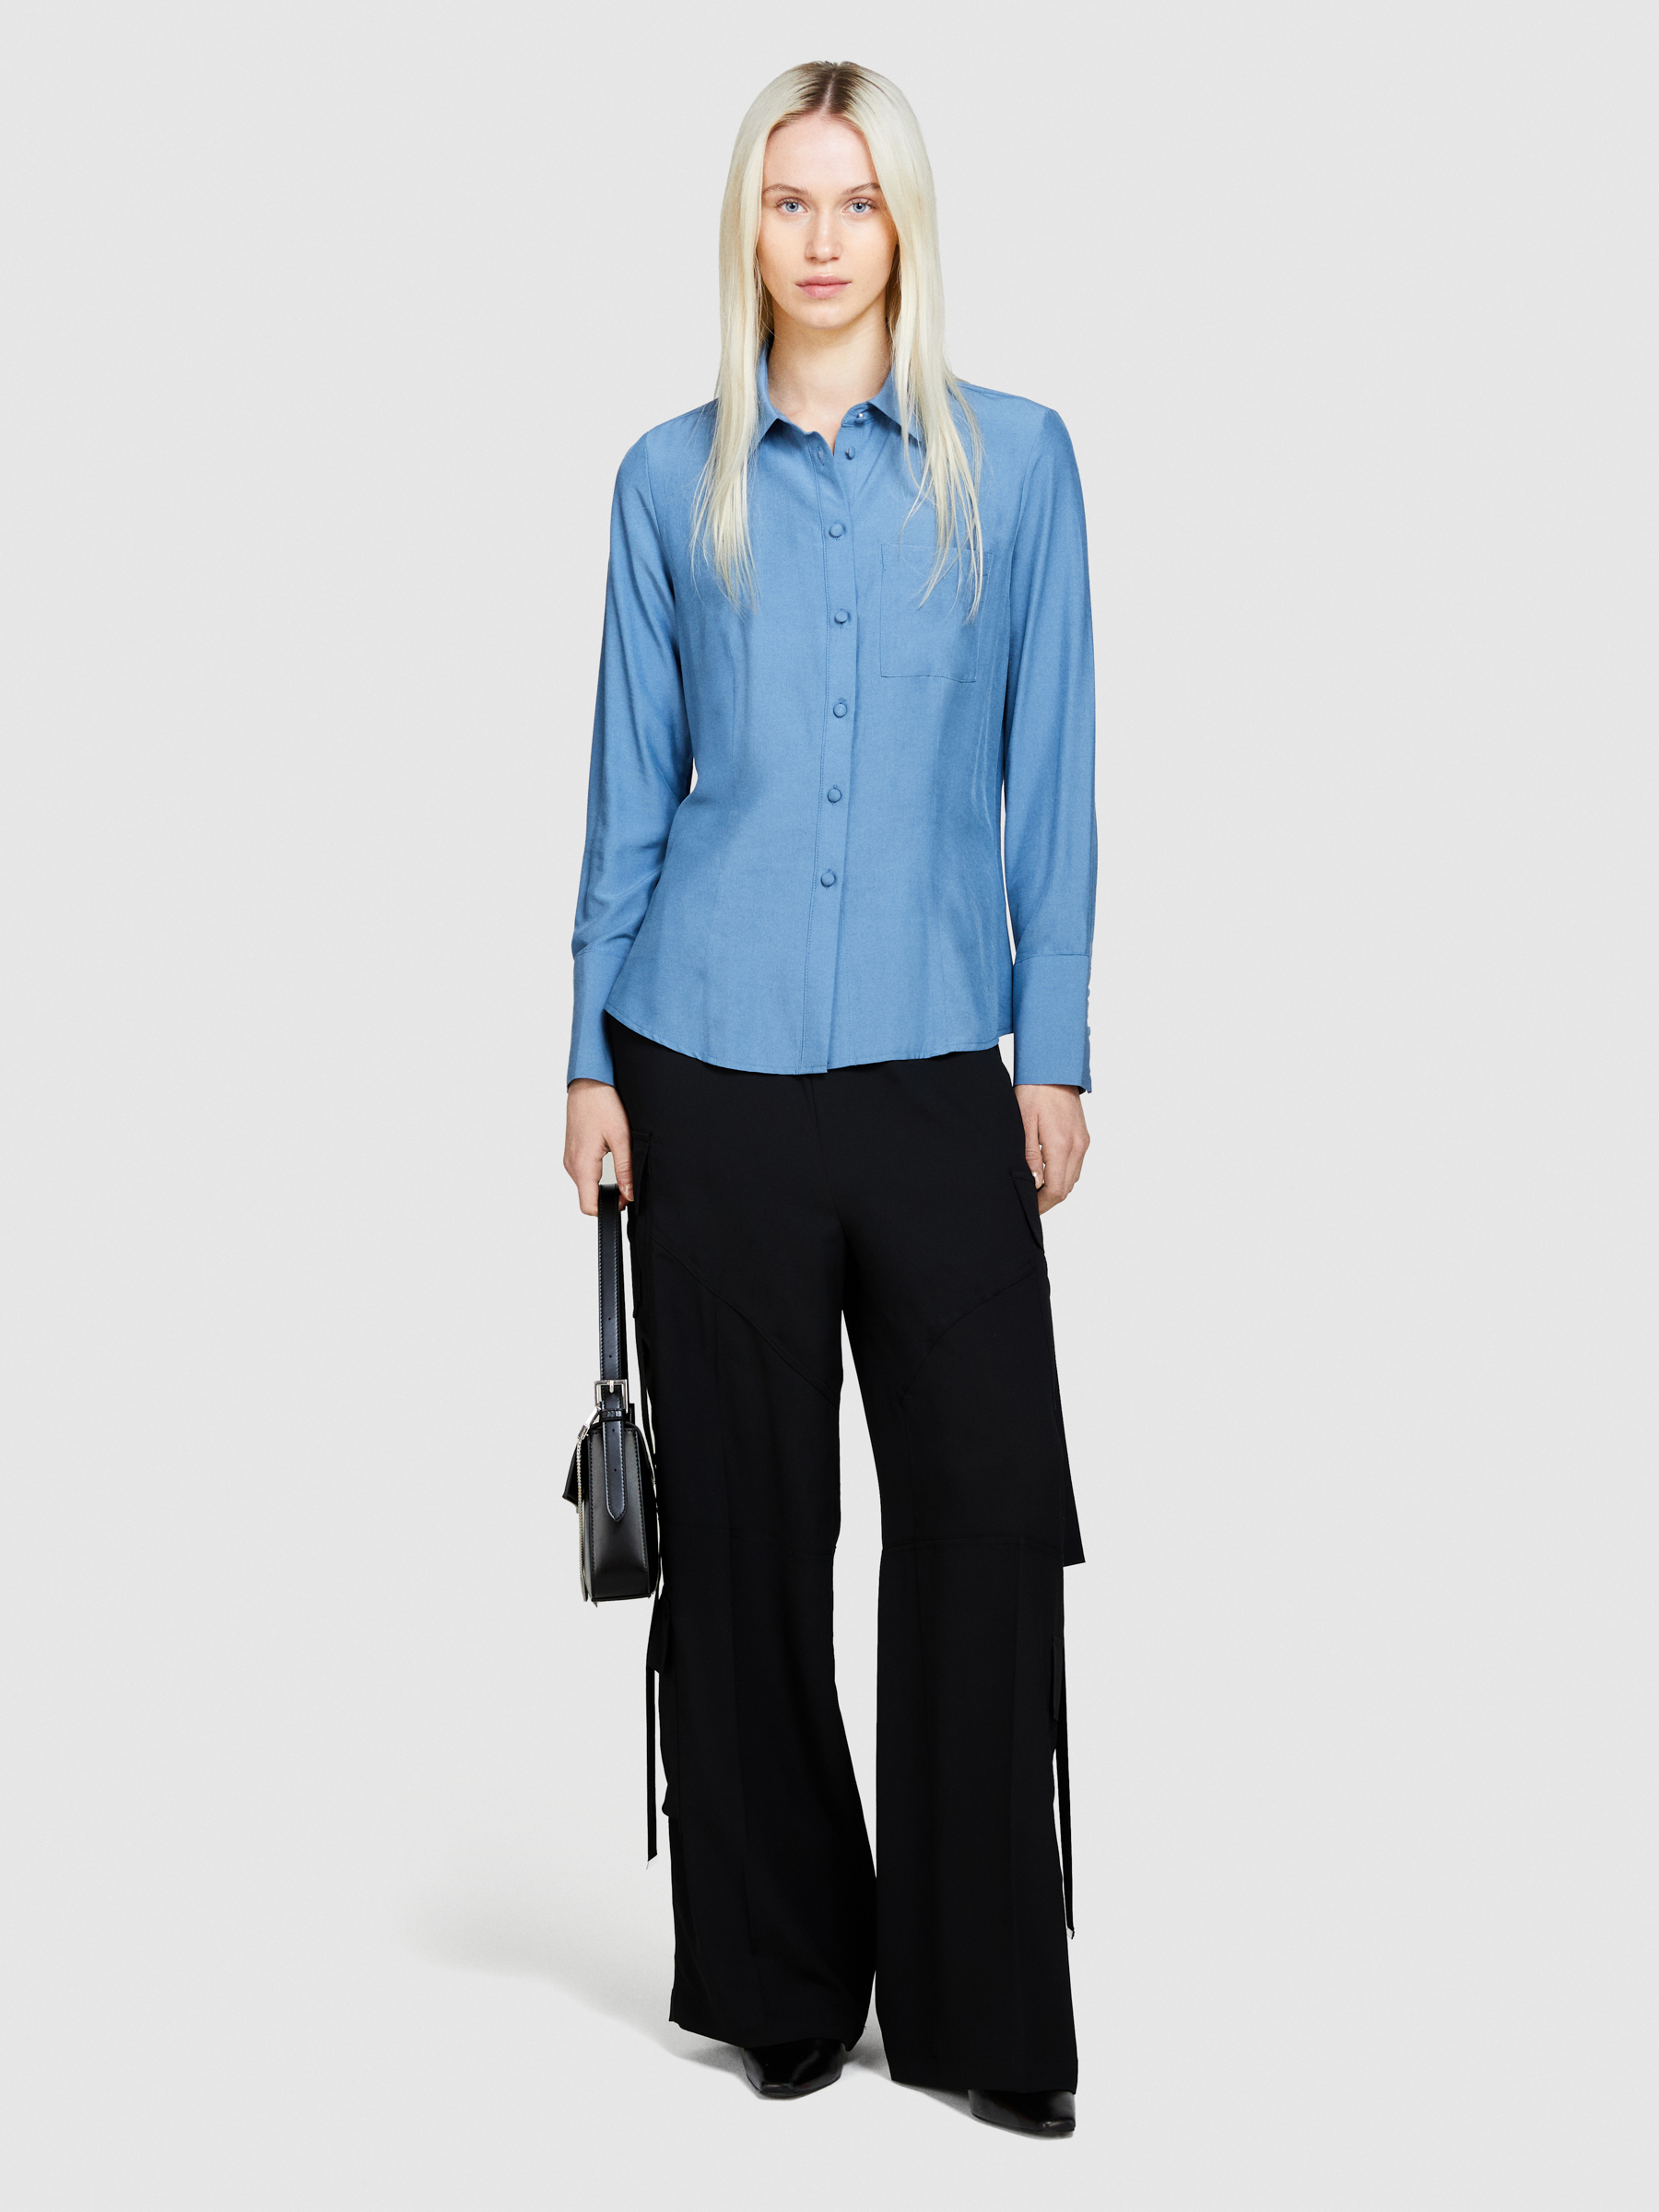 Sisley - Mixed Fabric Shirt, Woman, Light Blue, Size: XS